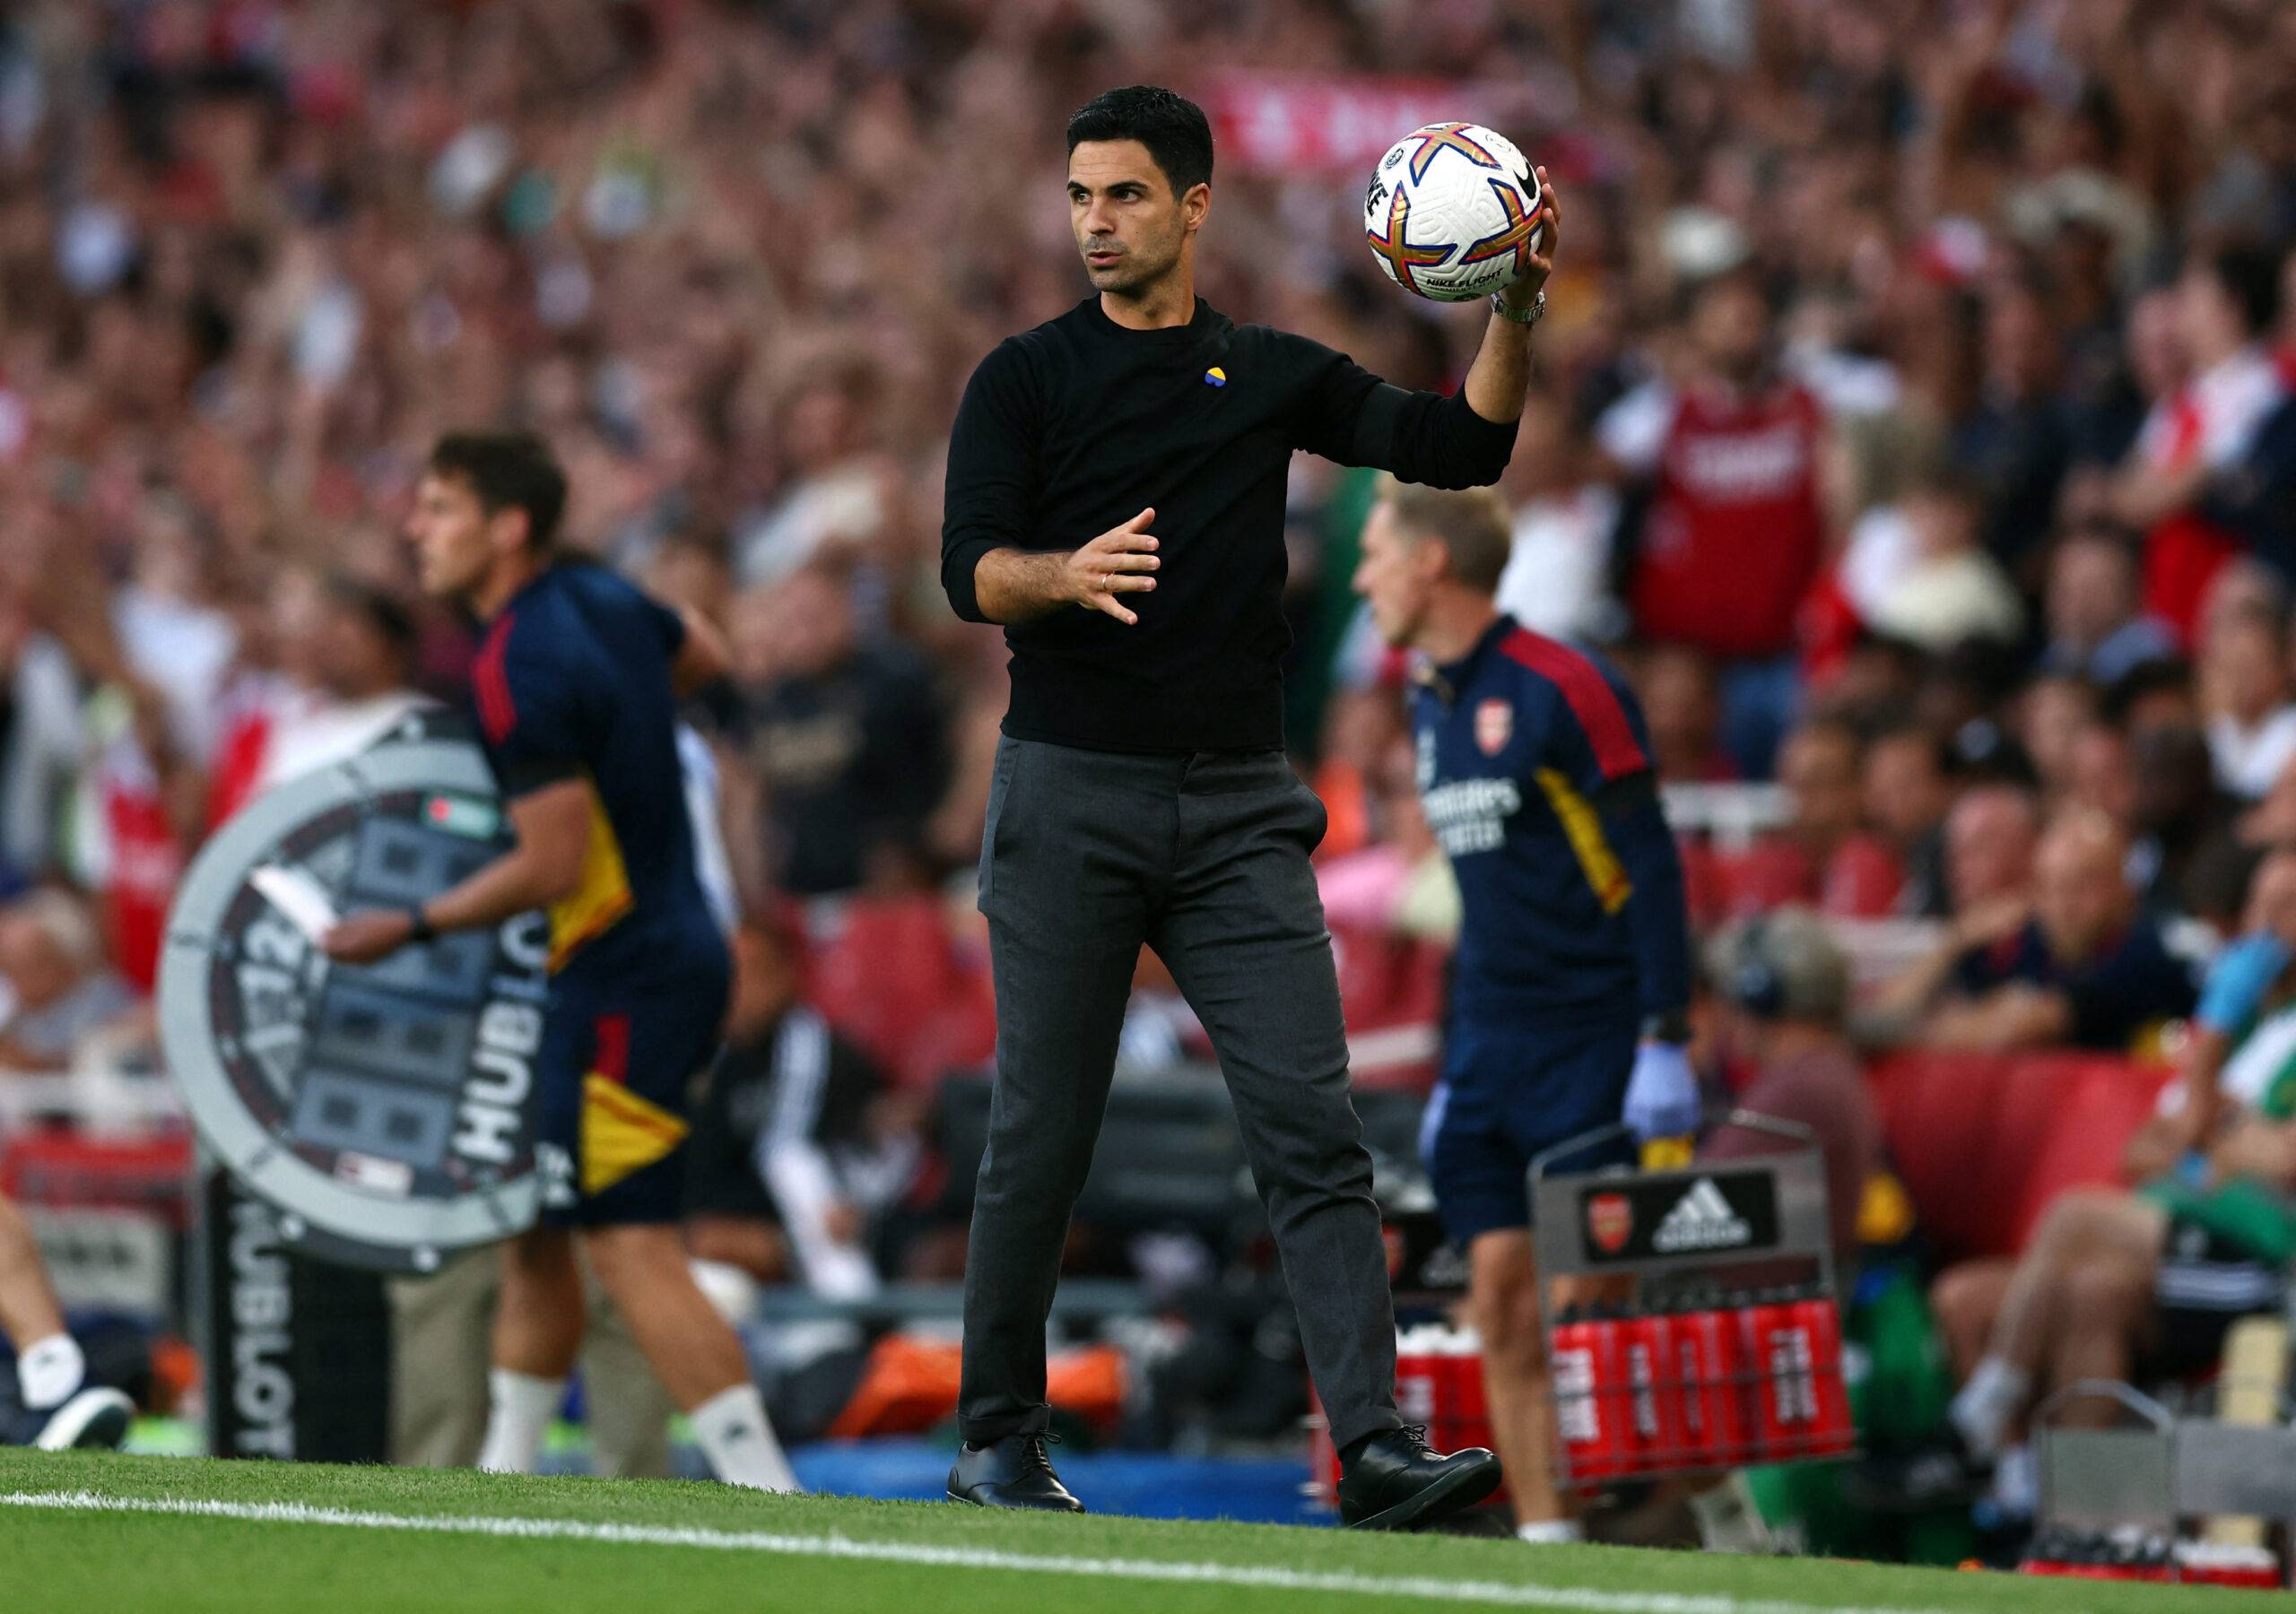 Arsenal boss Mikel Arteta holds the ball